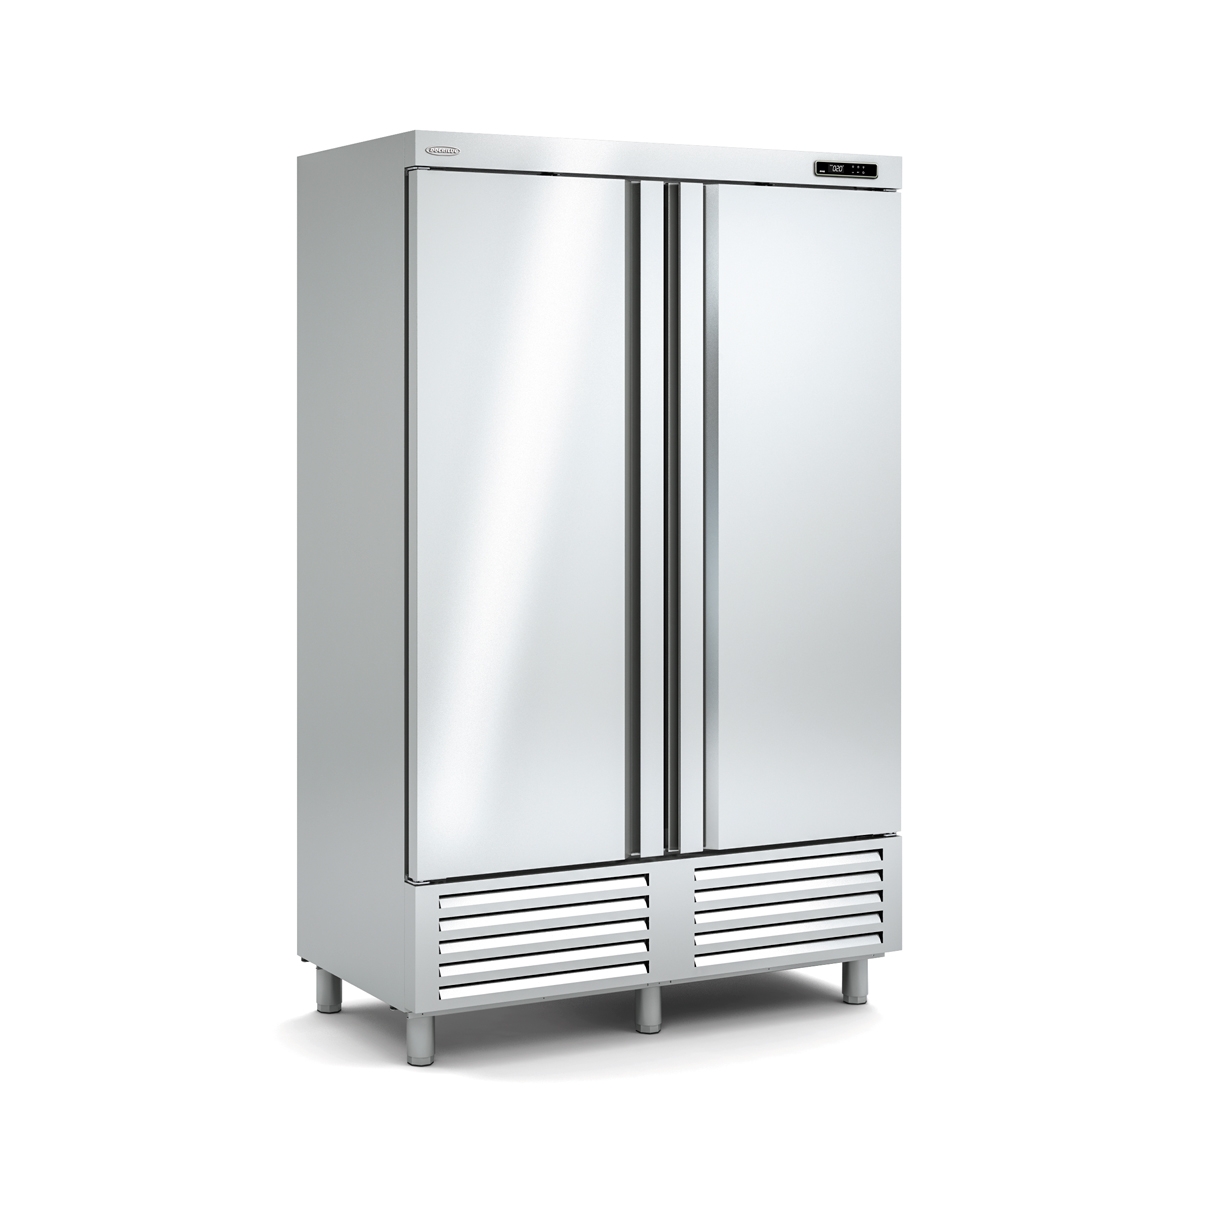 Snack Freezing Cabinet ACS-140-2